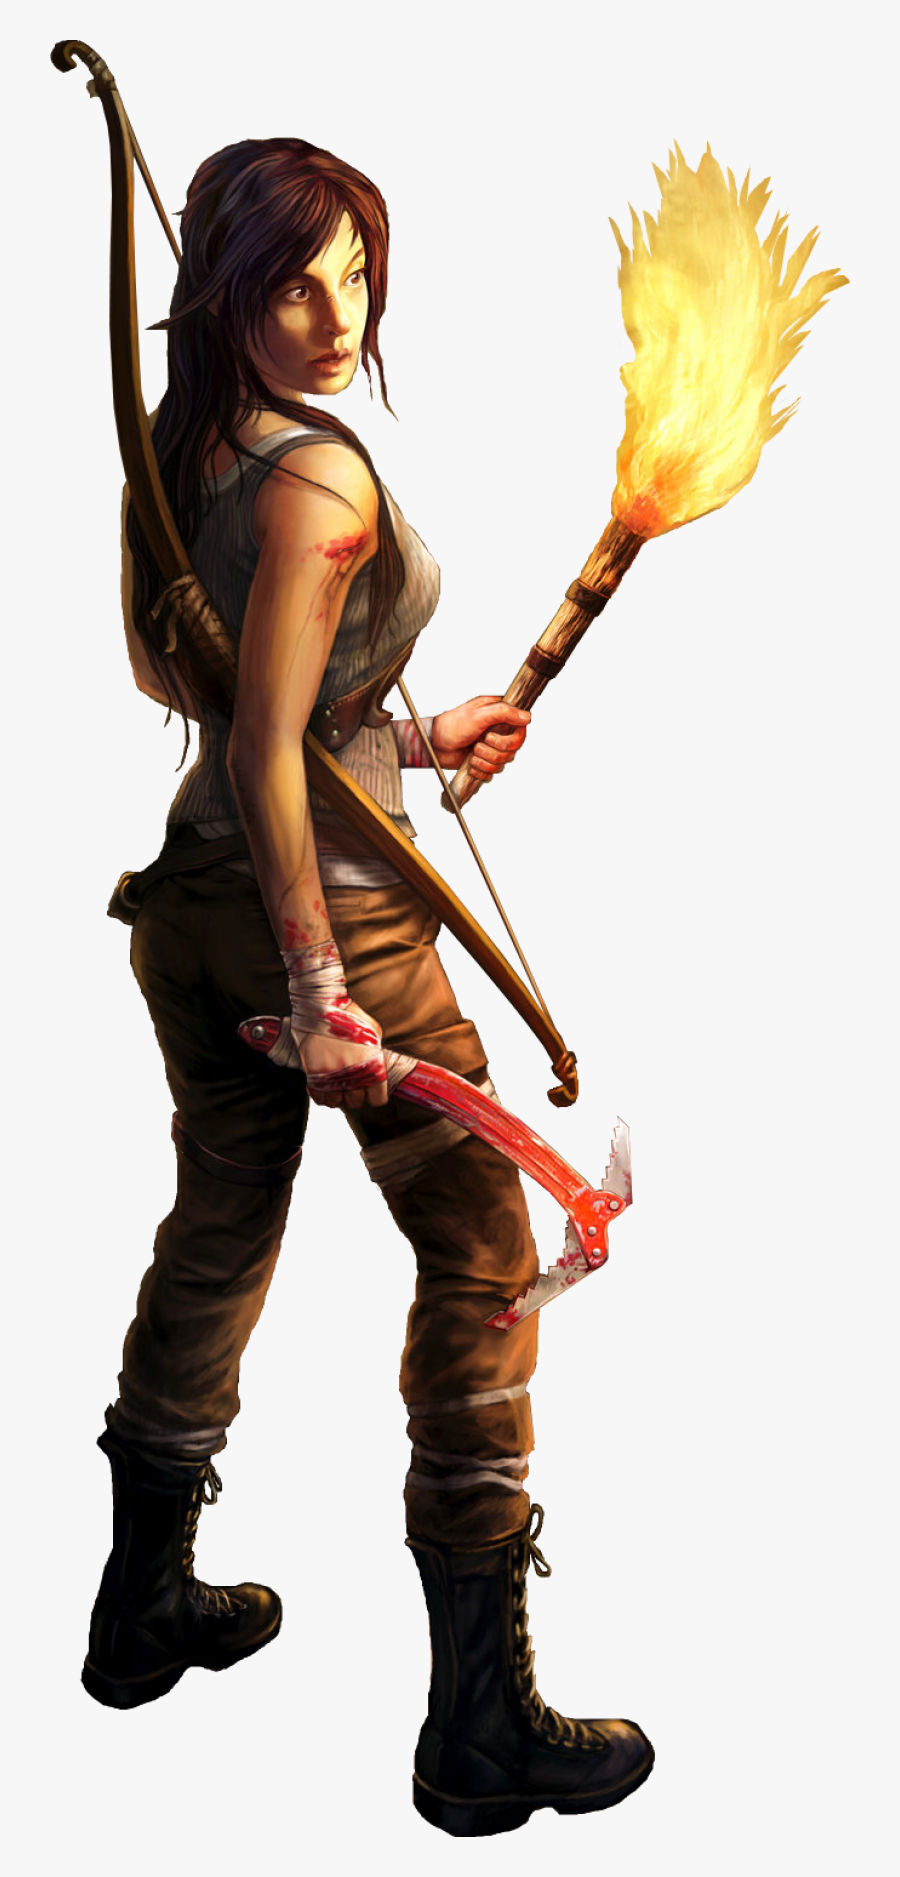 Lara Croft - Lara Croft 2017 Png, Transparent Clipart